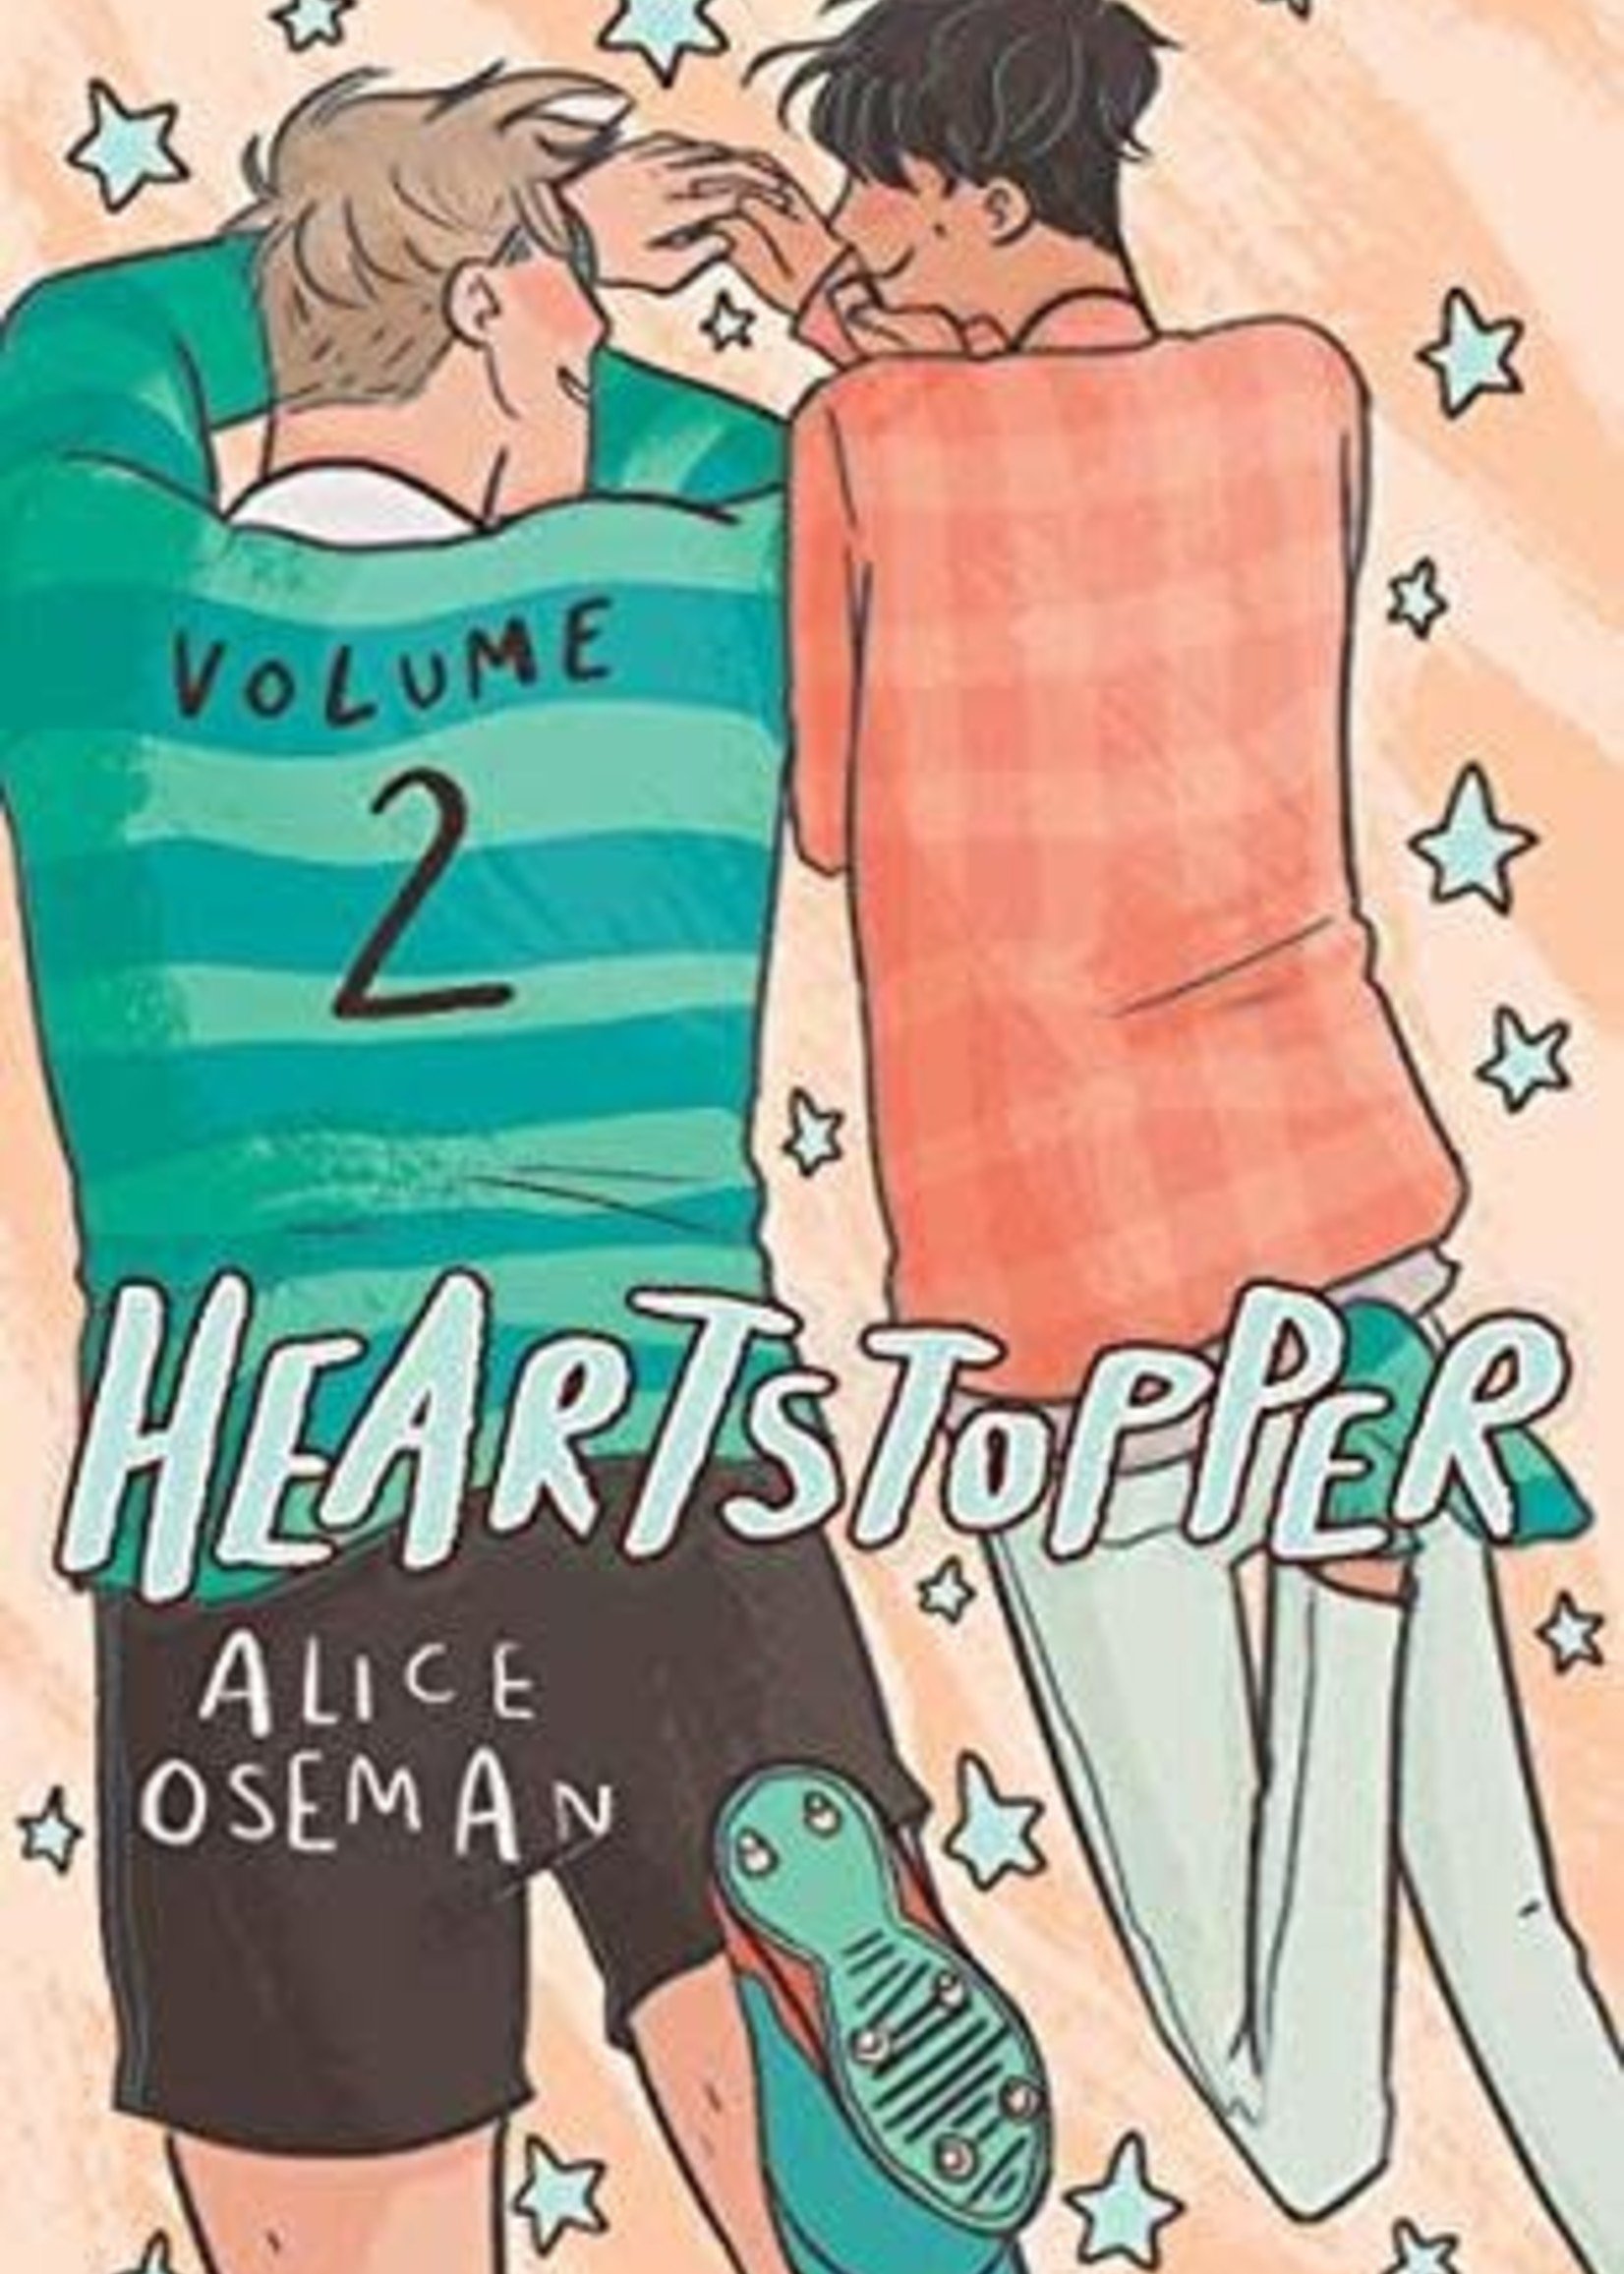 Heartstopper: Volume Two (Heartstopper #2) by Alice Oseman